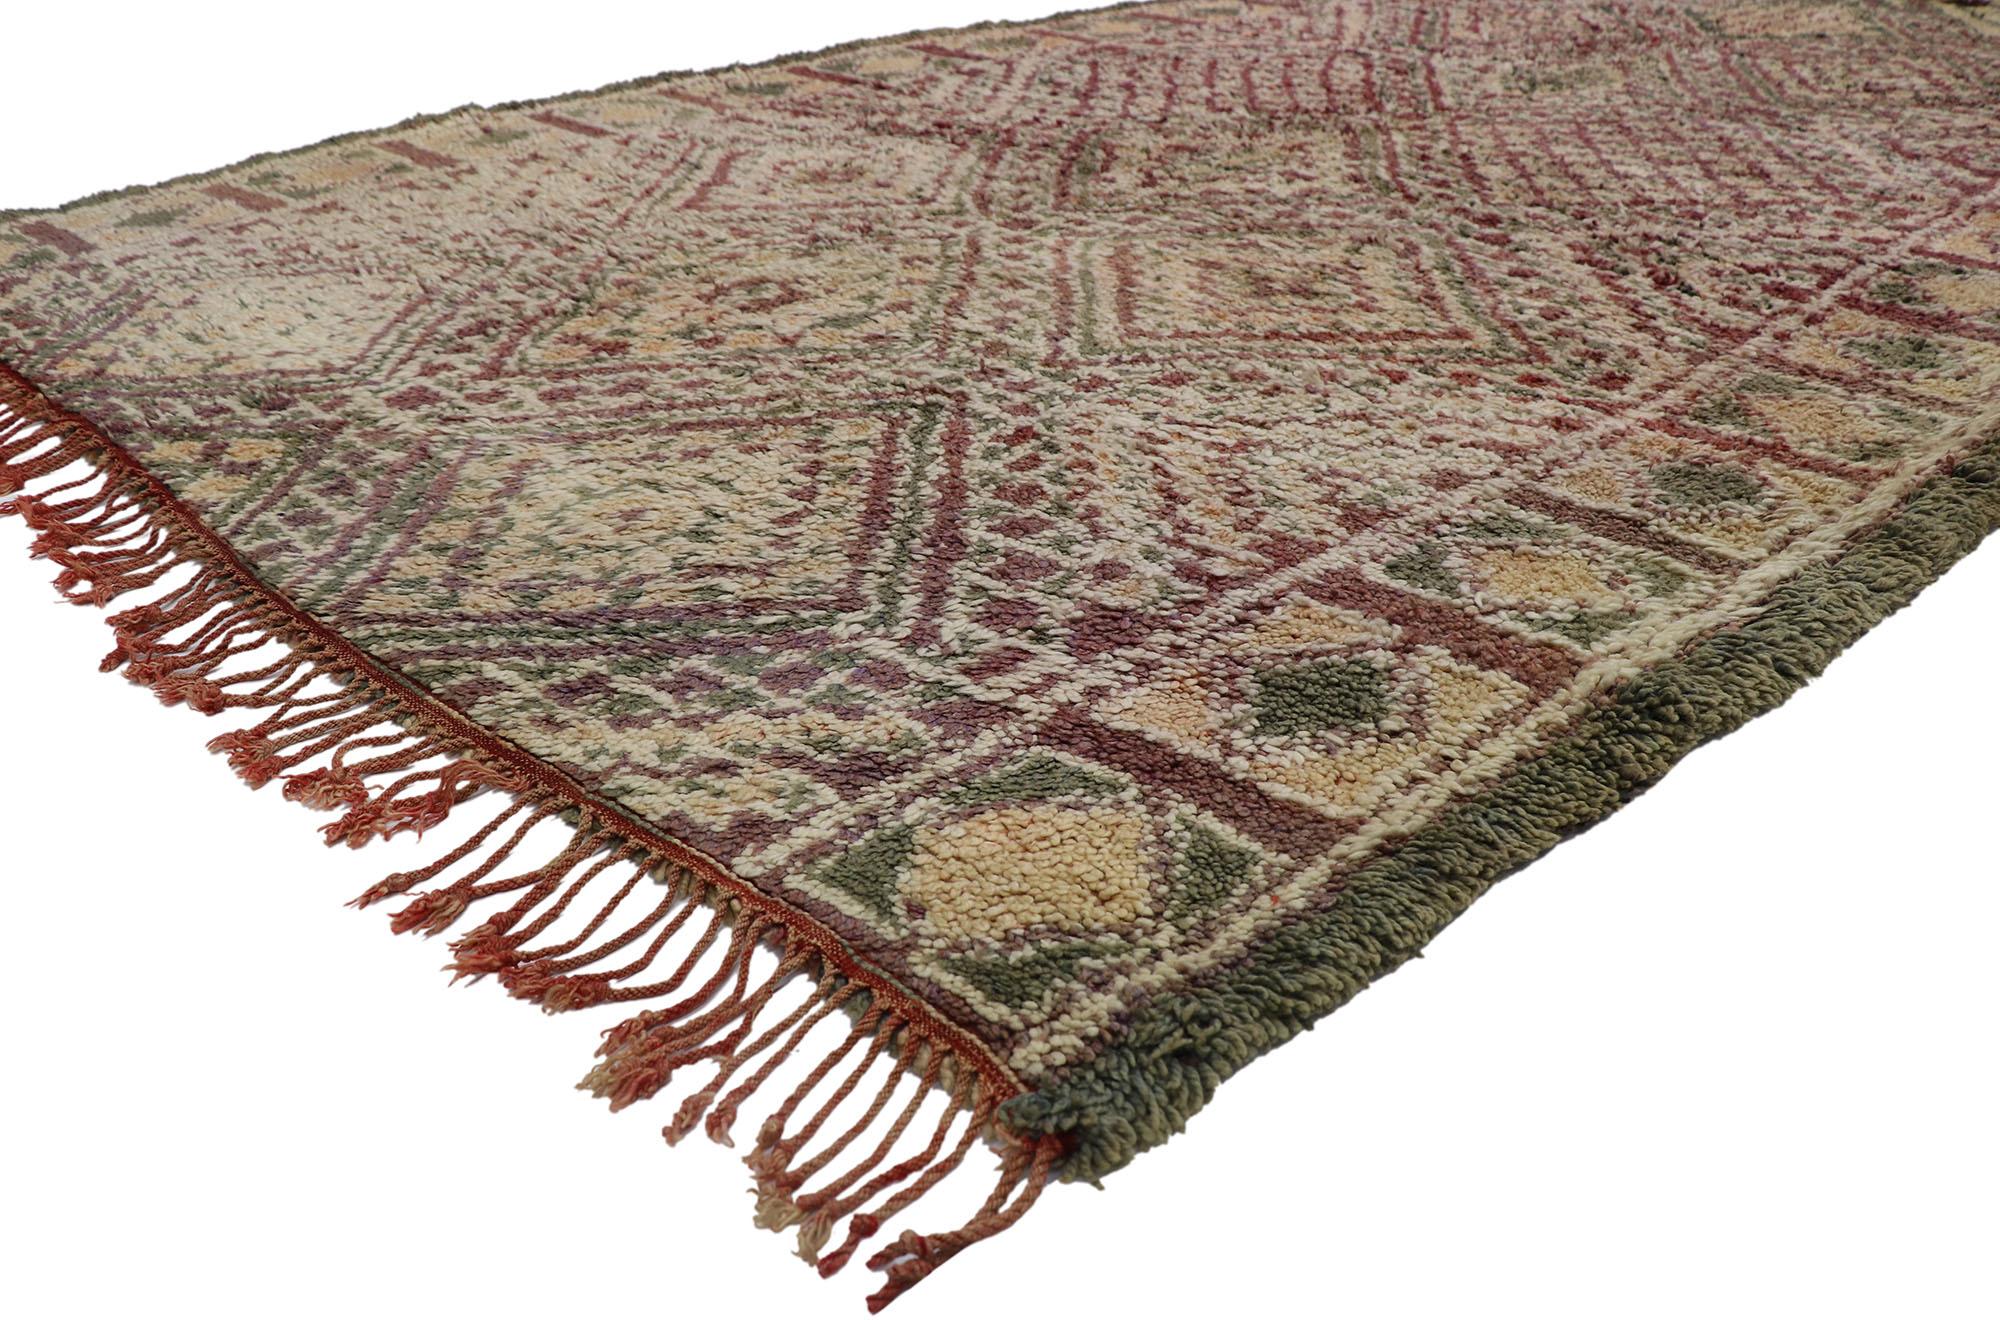 21234 Vieux tapis berbère marocain Zayane avec style bohème 07'03 x 12'11. Avec son design expressif et audacieux, ses détails et sa texture incroyables, ce tapis berbère vintage Zayane en laine nouée à la main est une vision captivante de la beauté